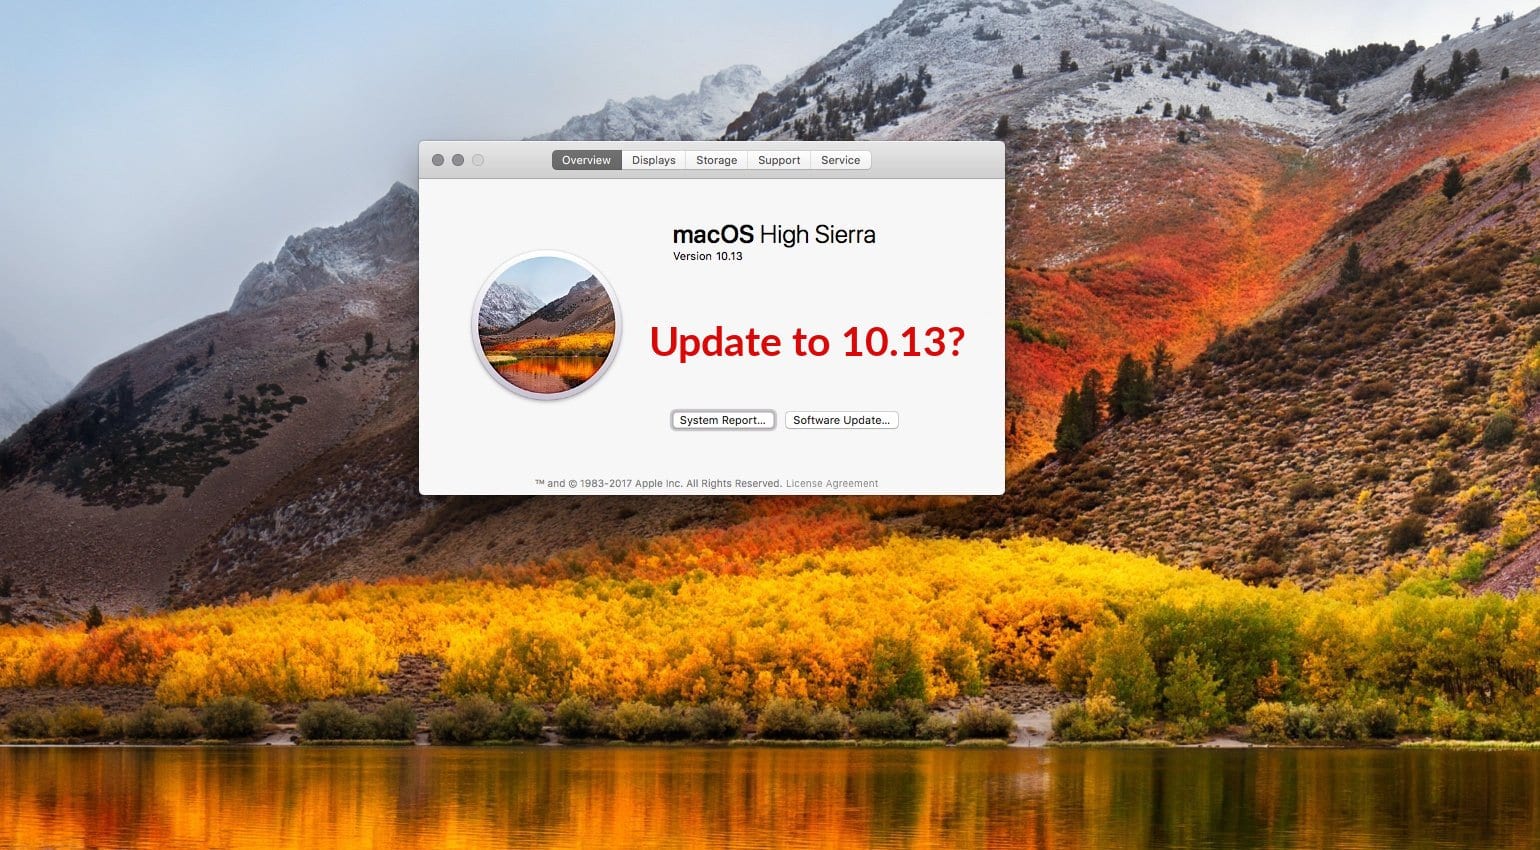 bioshock update issue torrent mac